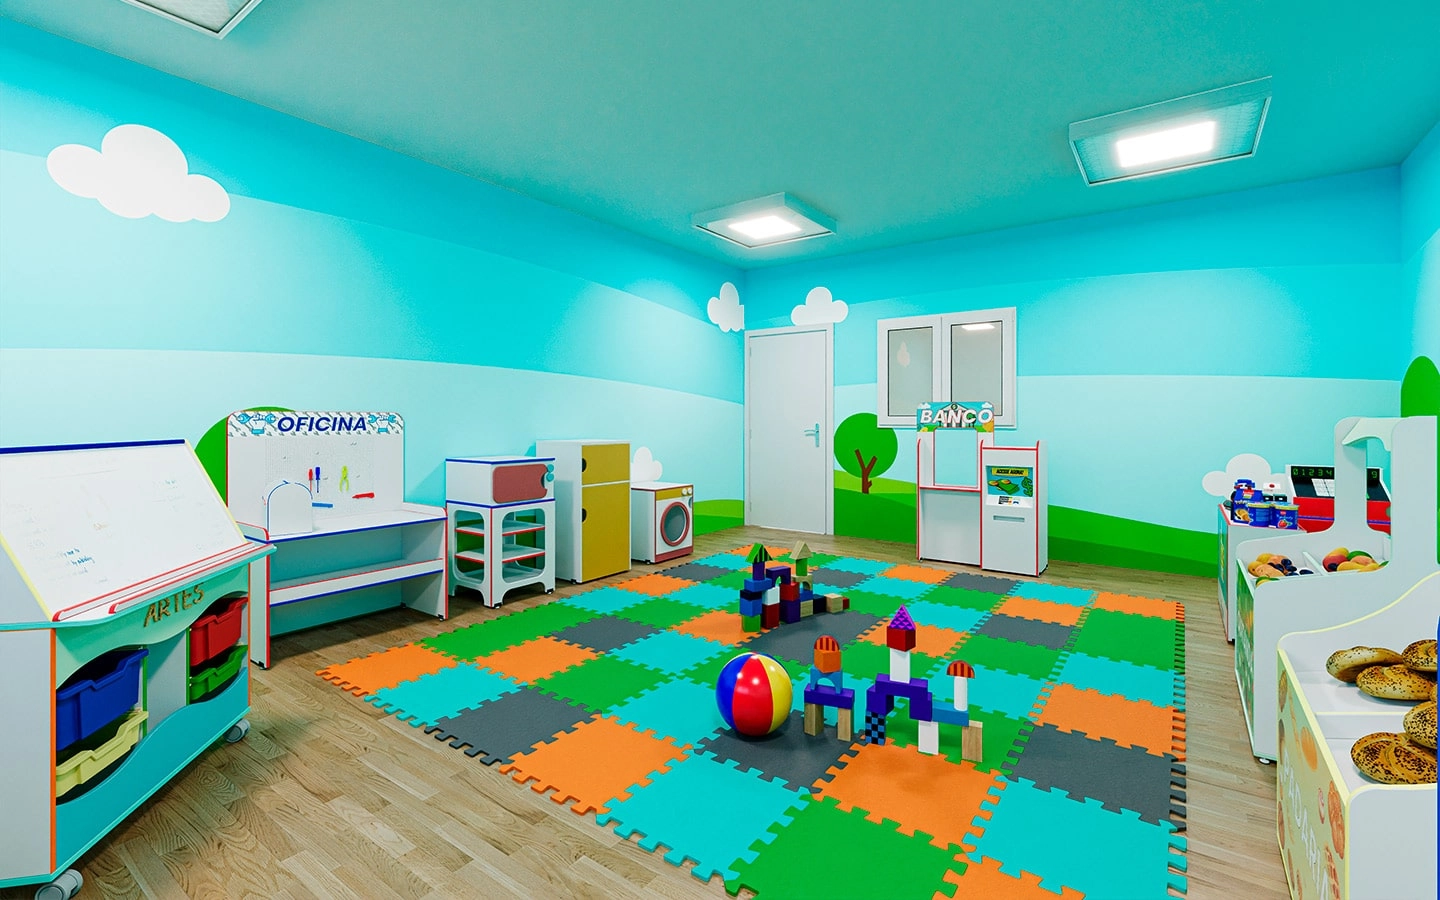 uploads/Sala com tapete de E.V.A no chão e sobre ele alguns brinquedos - nas paredes diversos armários com brinquedos e temáticas para que sejam utilizados nas brincadeiras.